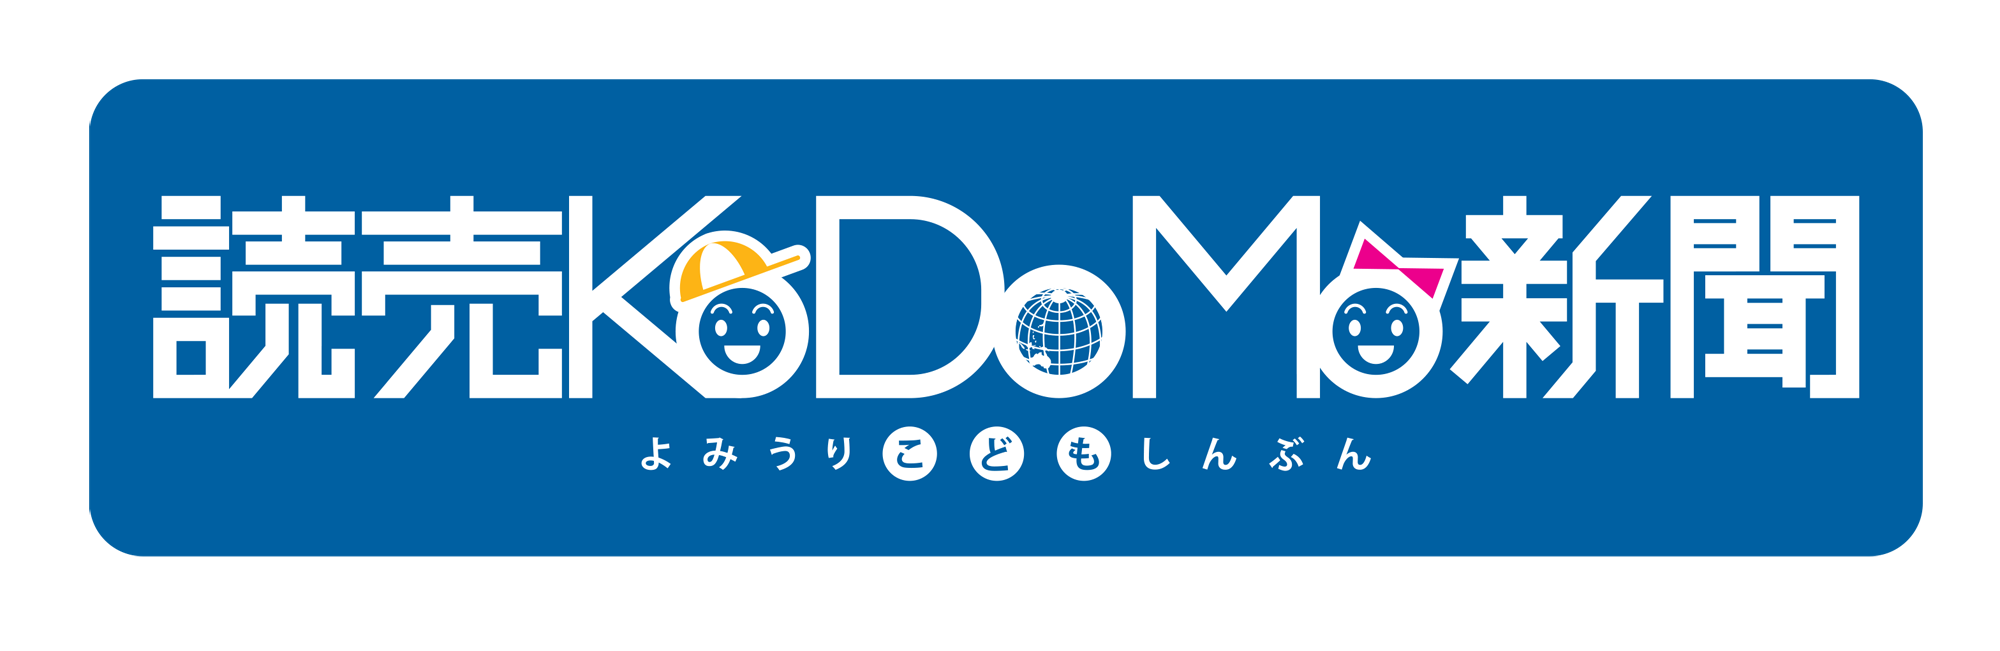 読売KODOMO新聞ロゴの画像